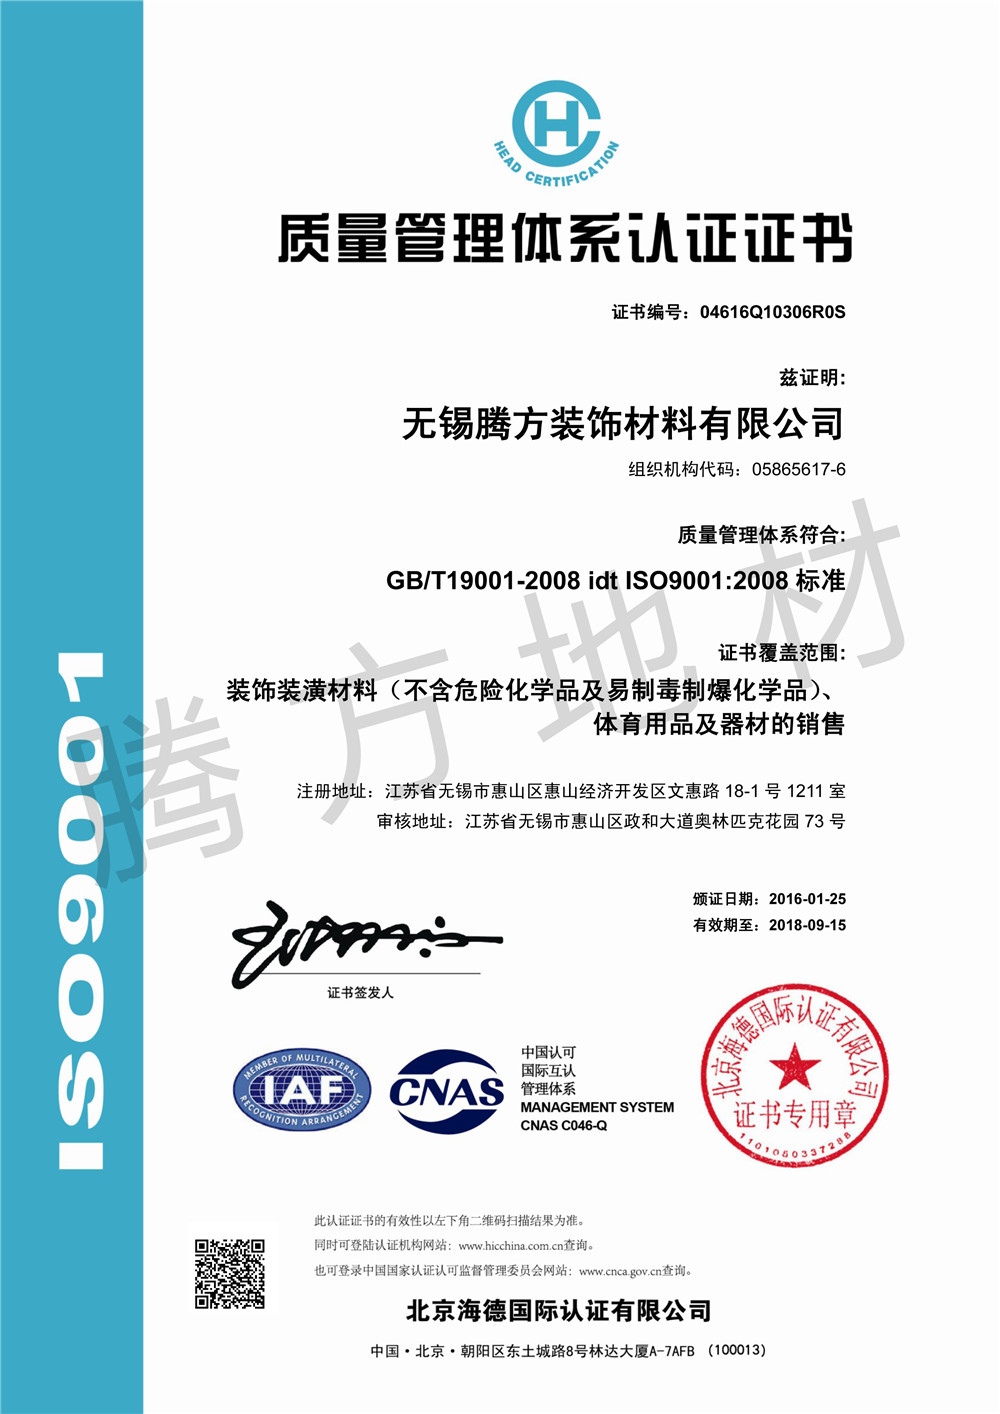 欧陆通过ISO9001:2008质量管理体系认证